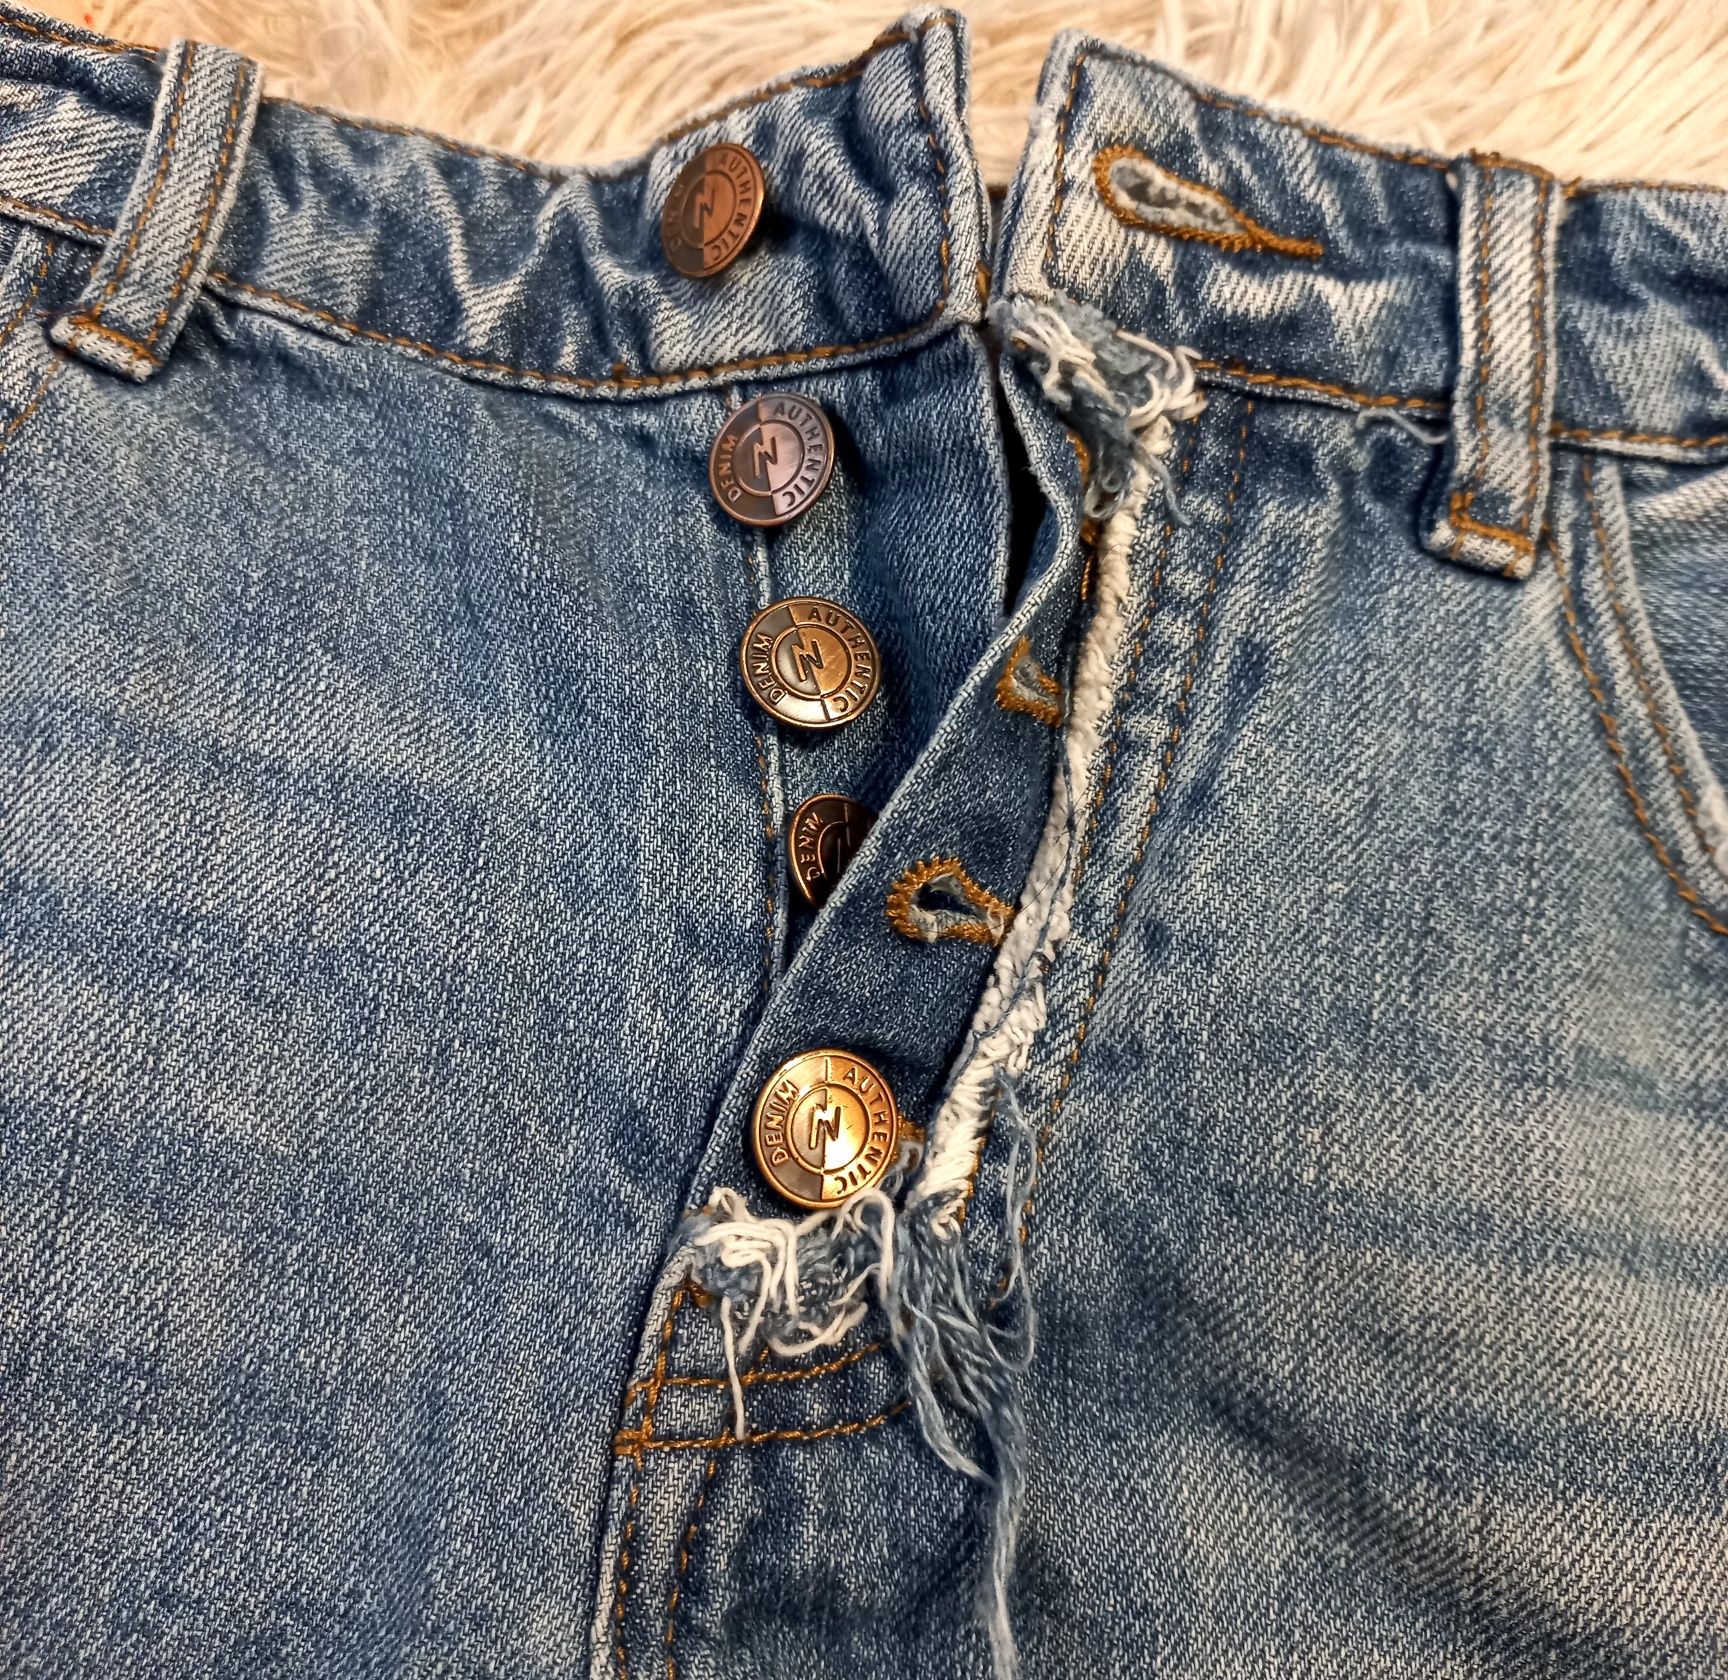 Короткі джинсові шорти